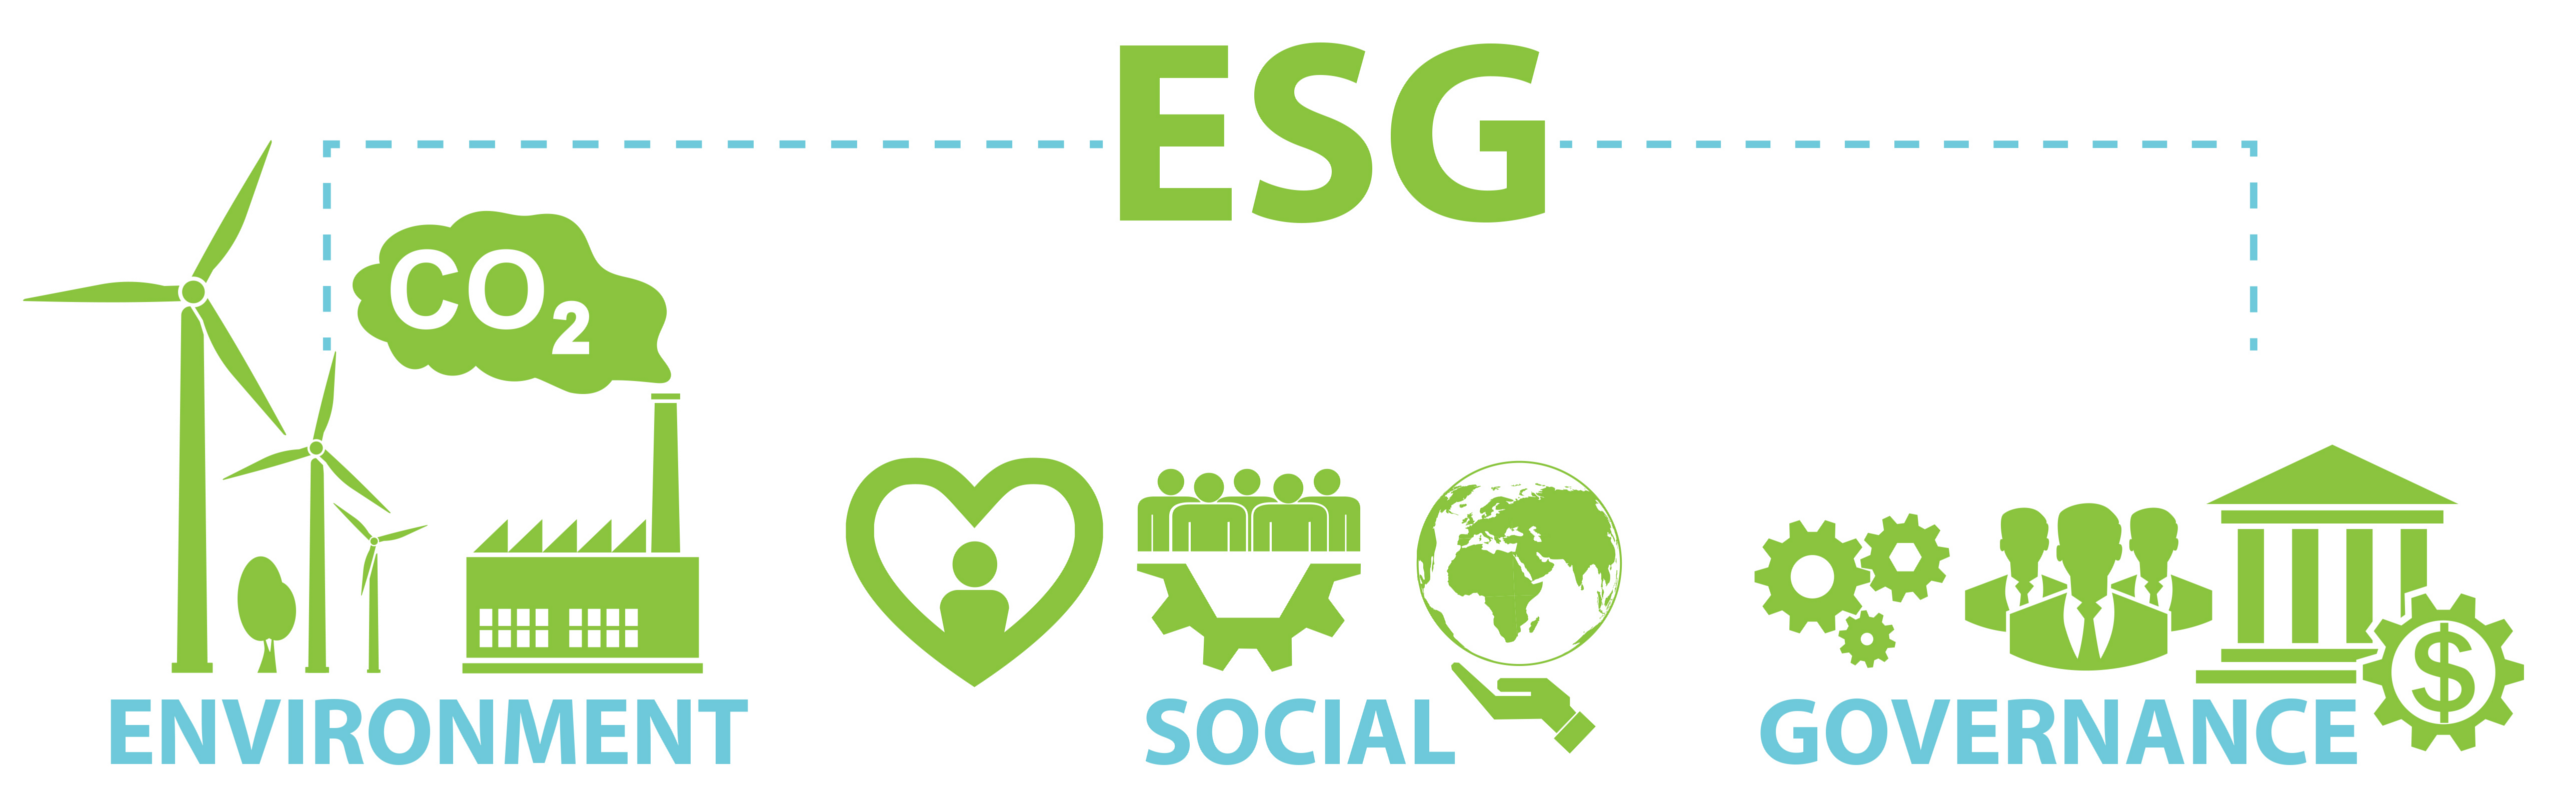 Банк esg. ESG проекты. ESG значок. ESG концепция. ESG экология.